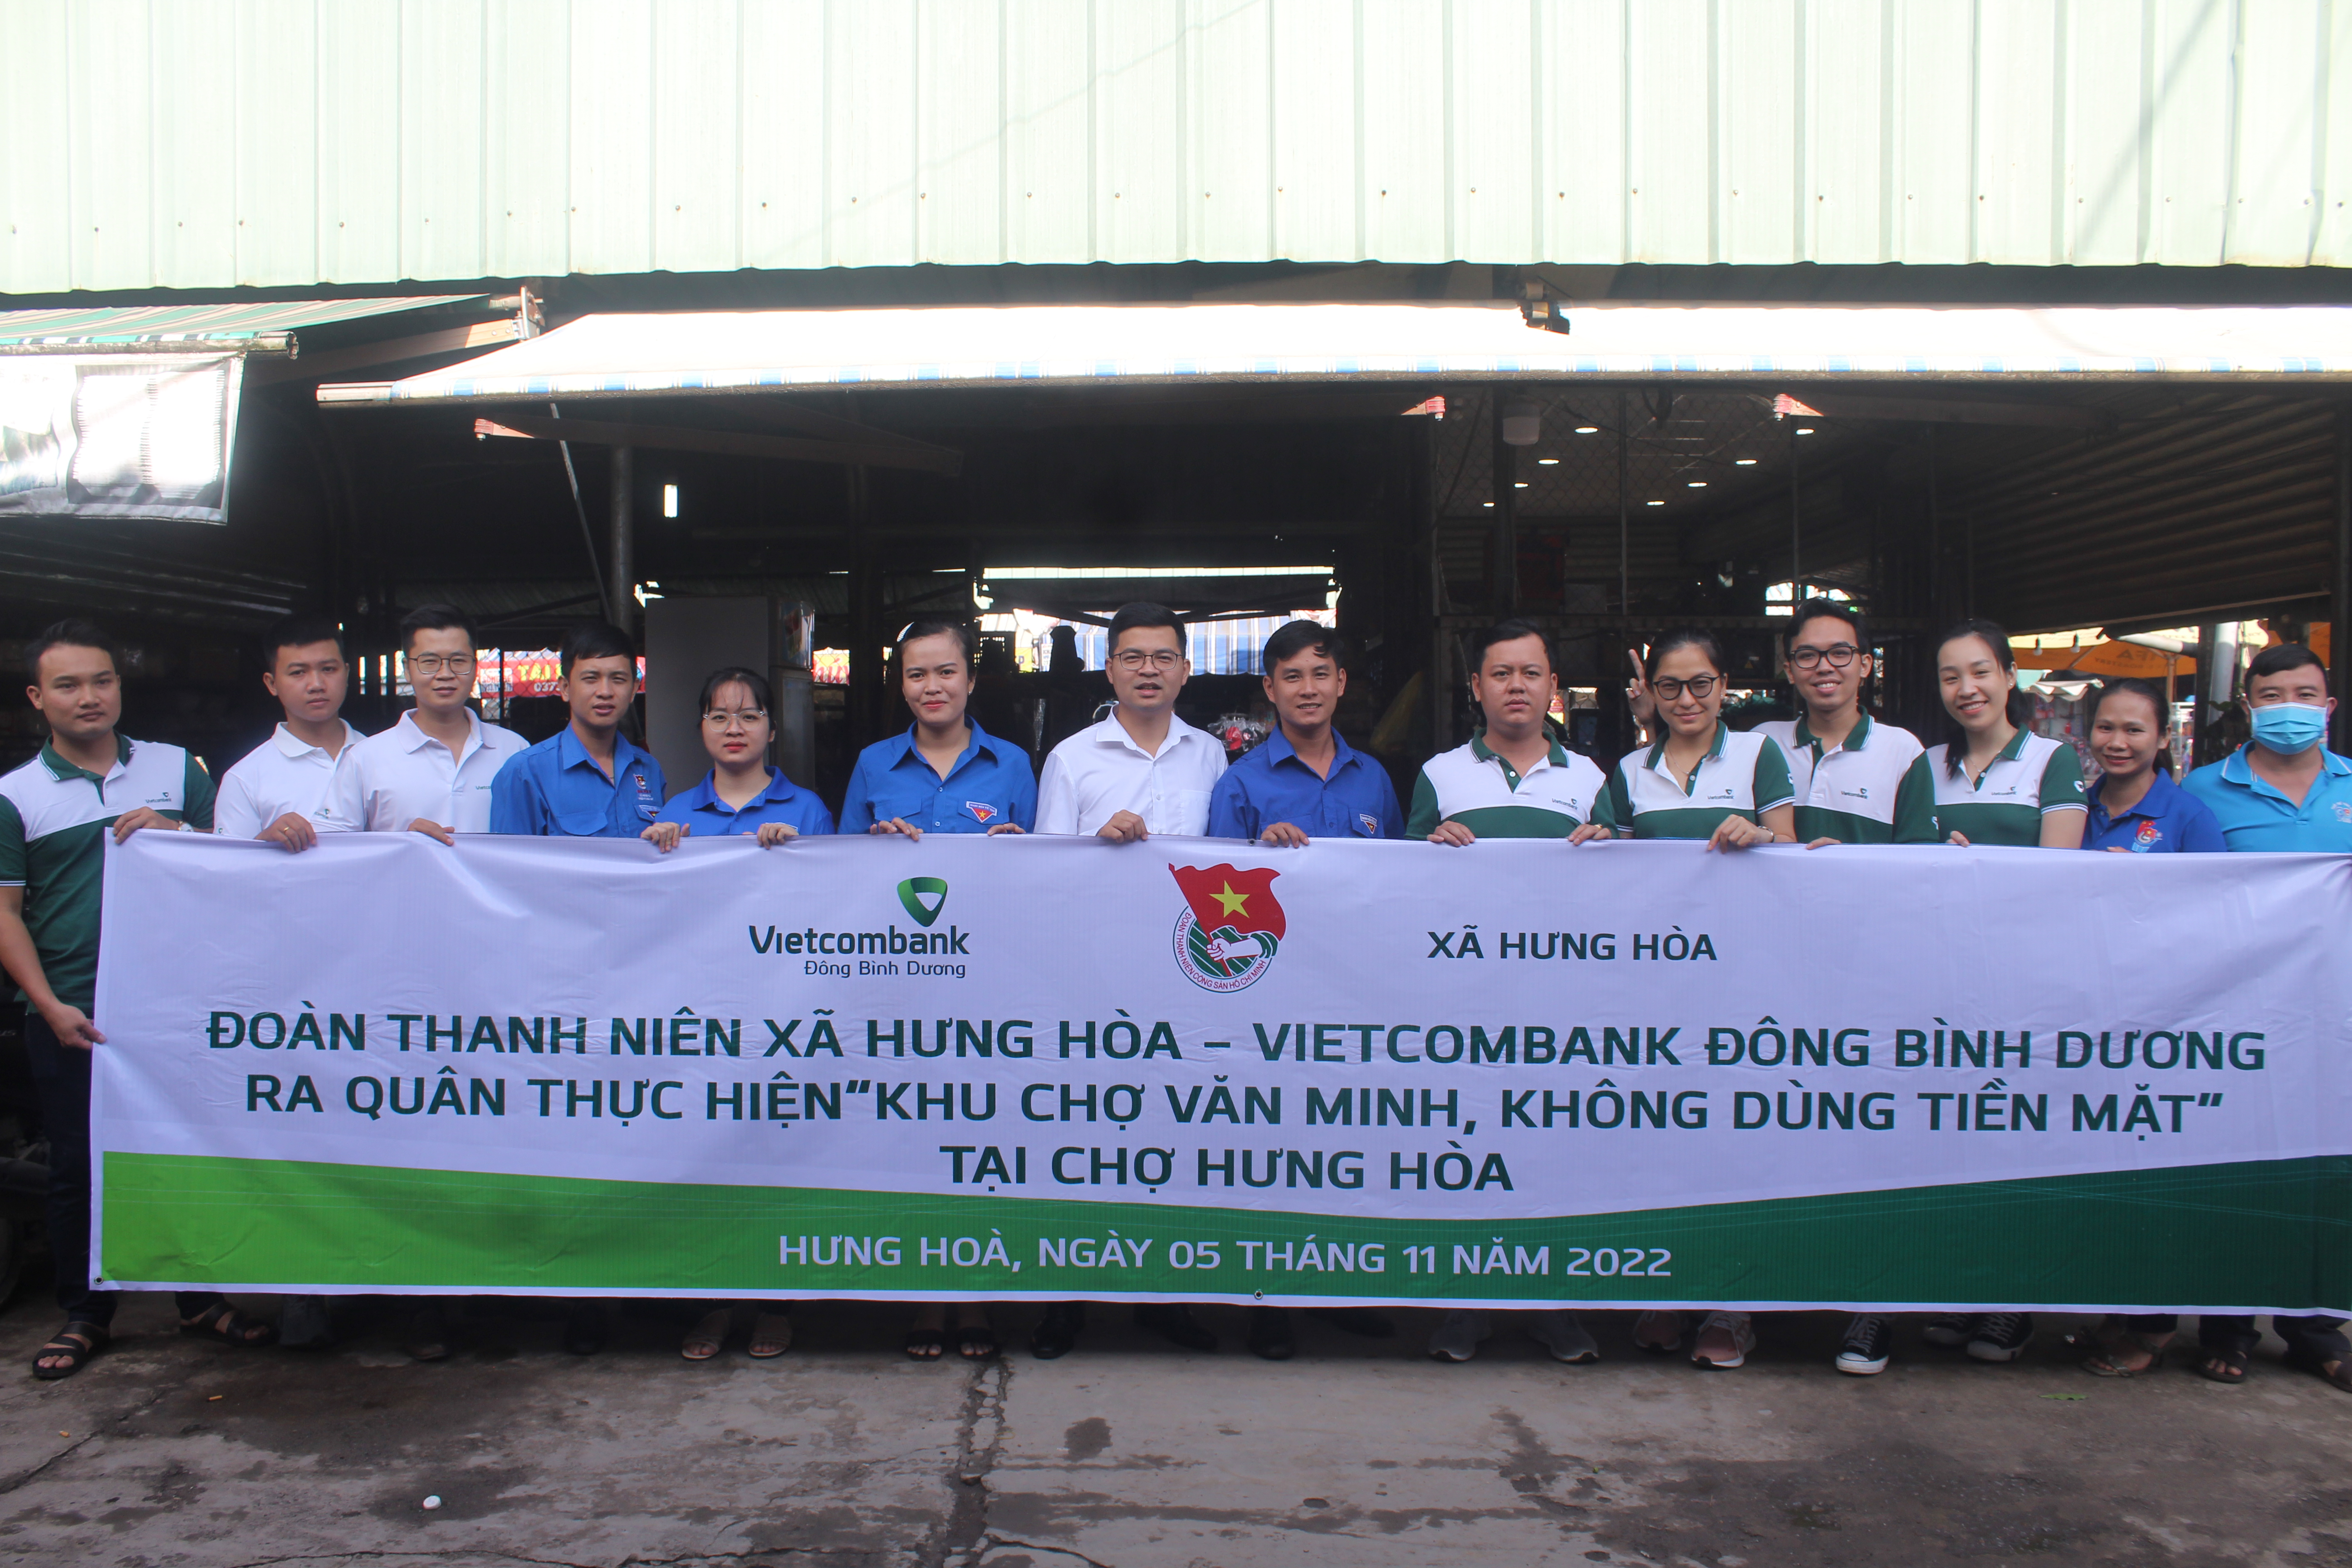 Đoàn thanh niên xã Hưng Hòa và Ngân hàng Vietcombank Đông Bình Dương, tổ chức chương trình khu chợ văn minh không dùng tiền mặt.